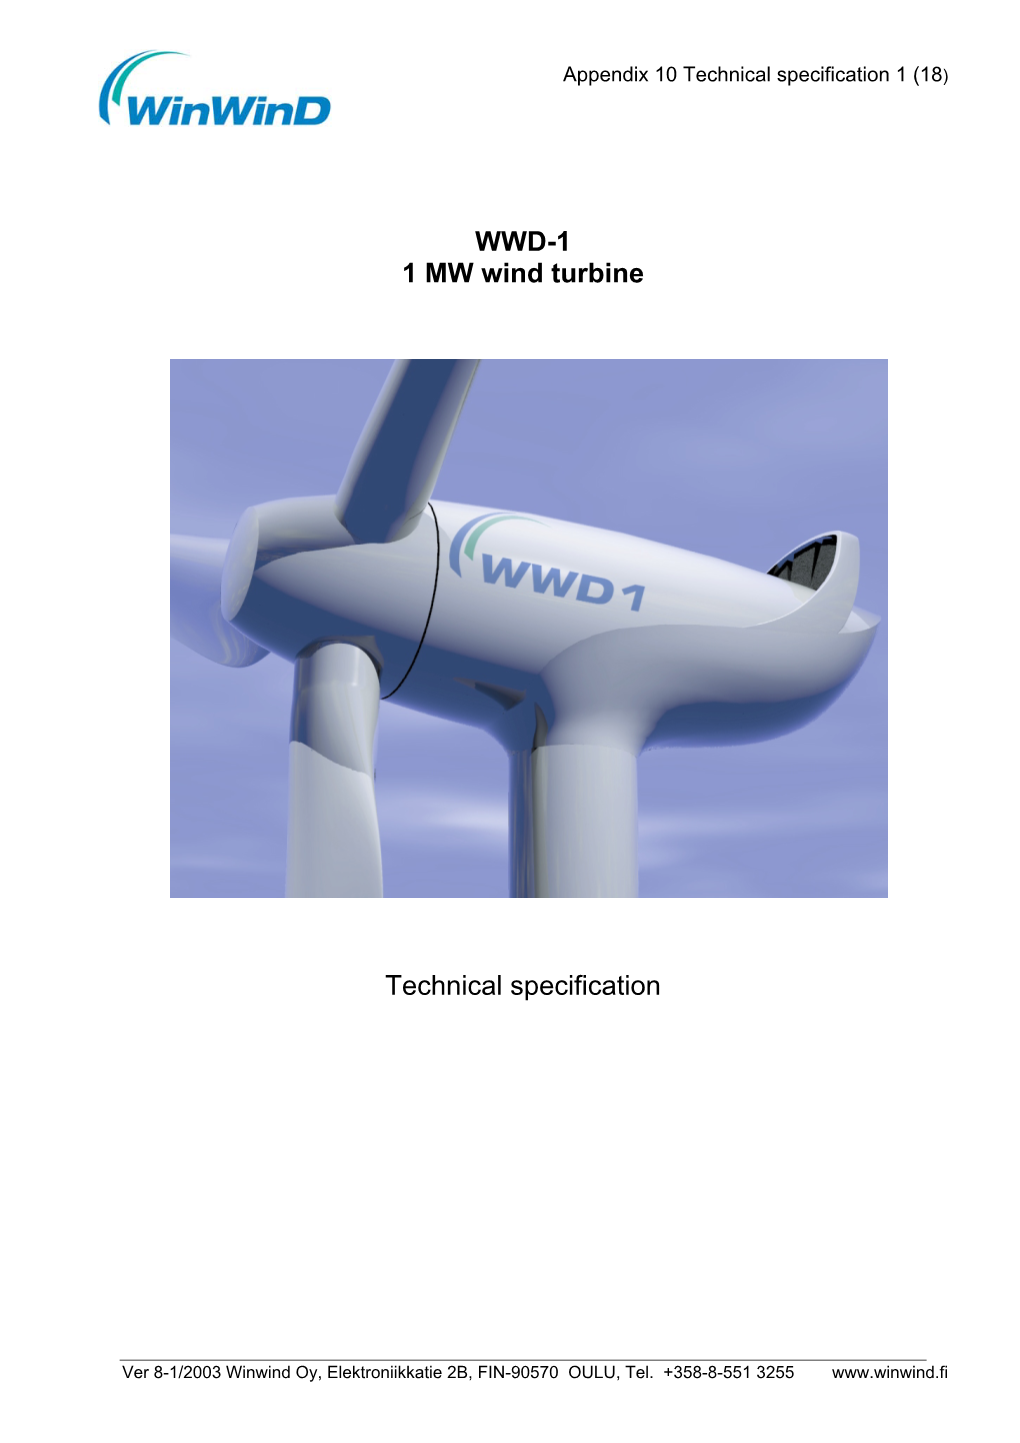 WWD-1 1 MW Wind Turbine Technical Specification